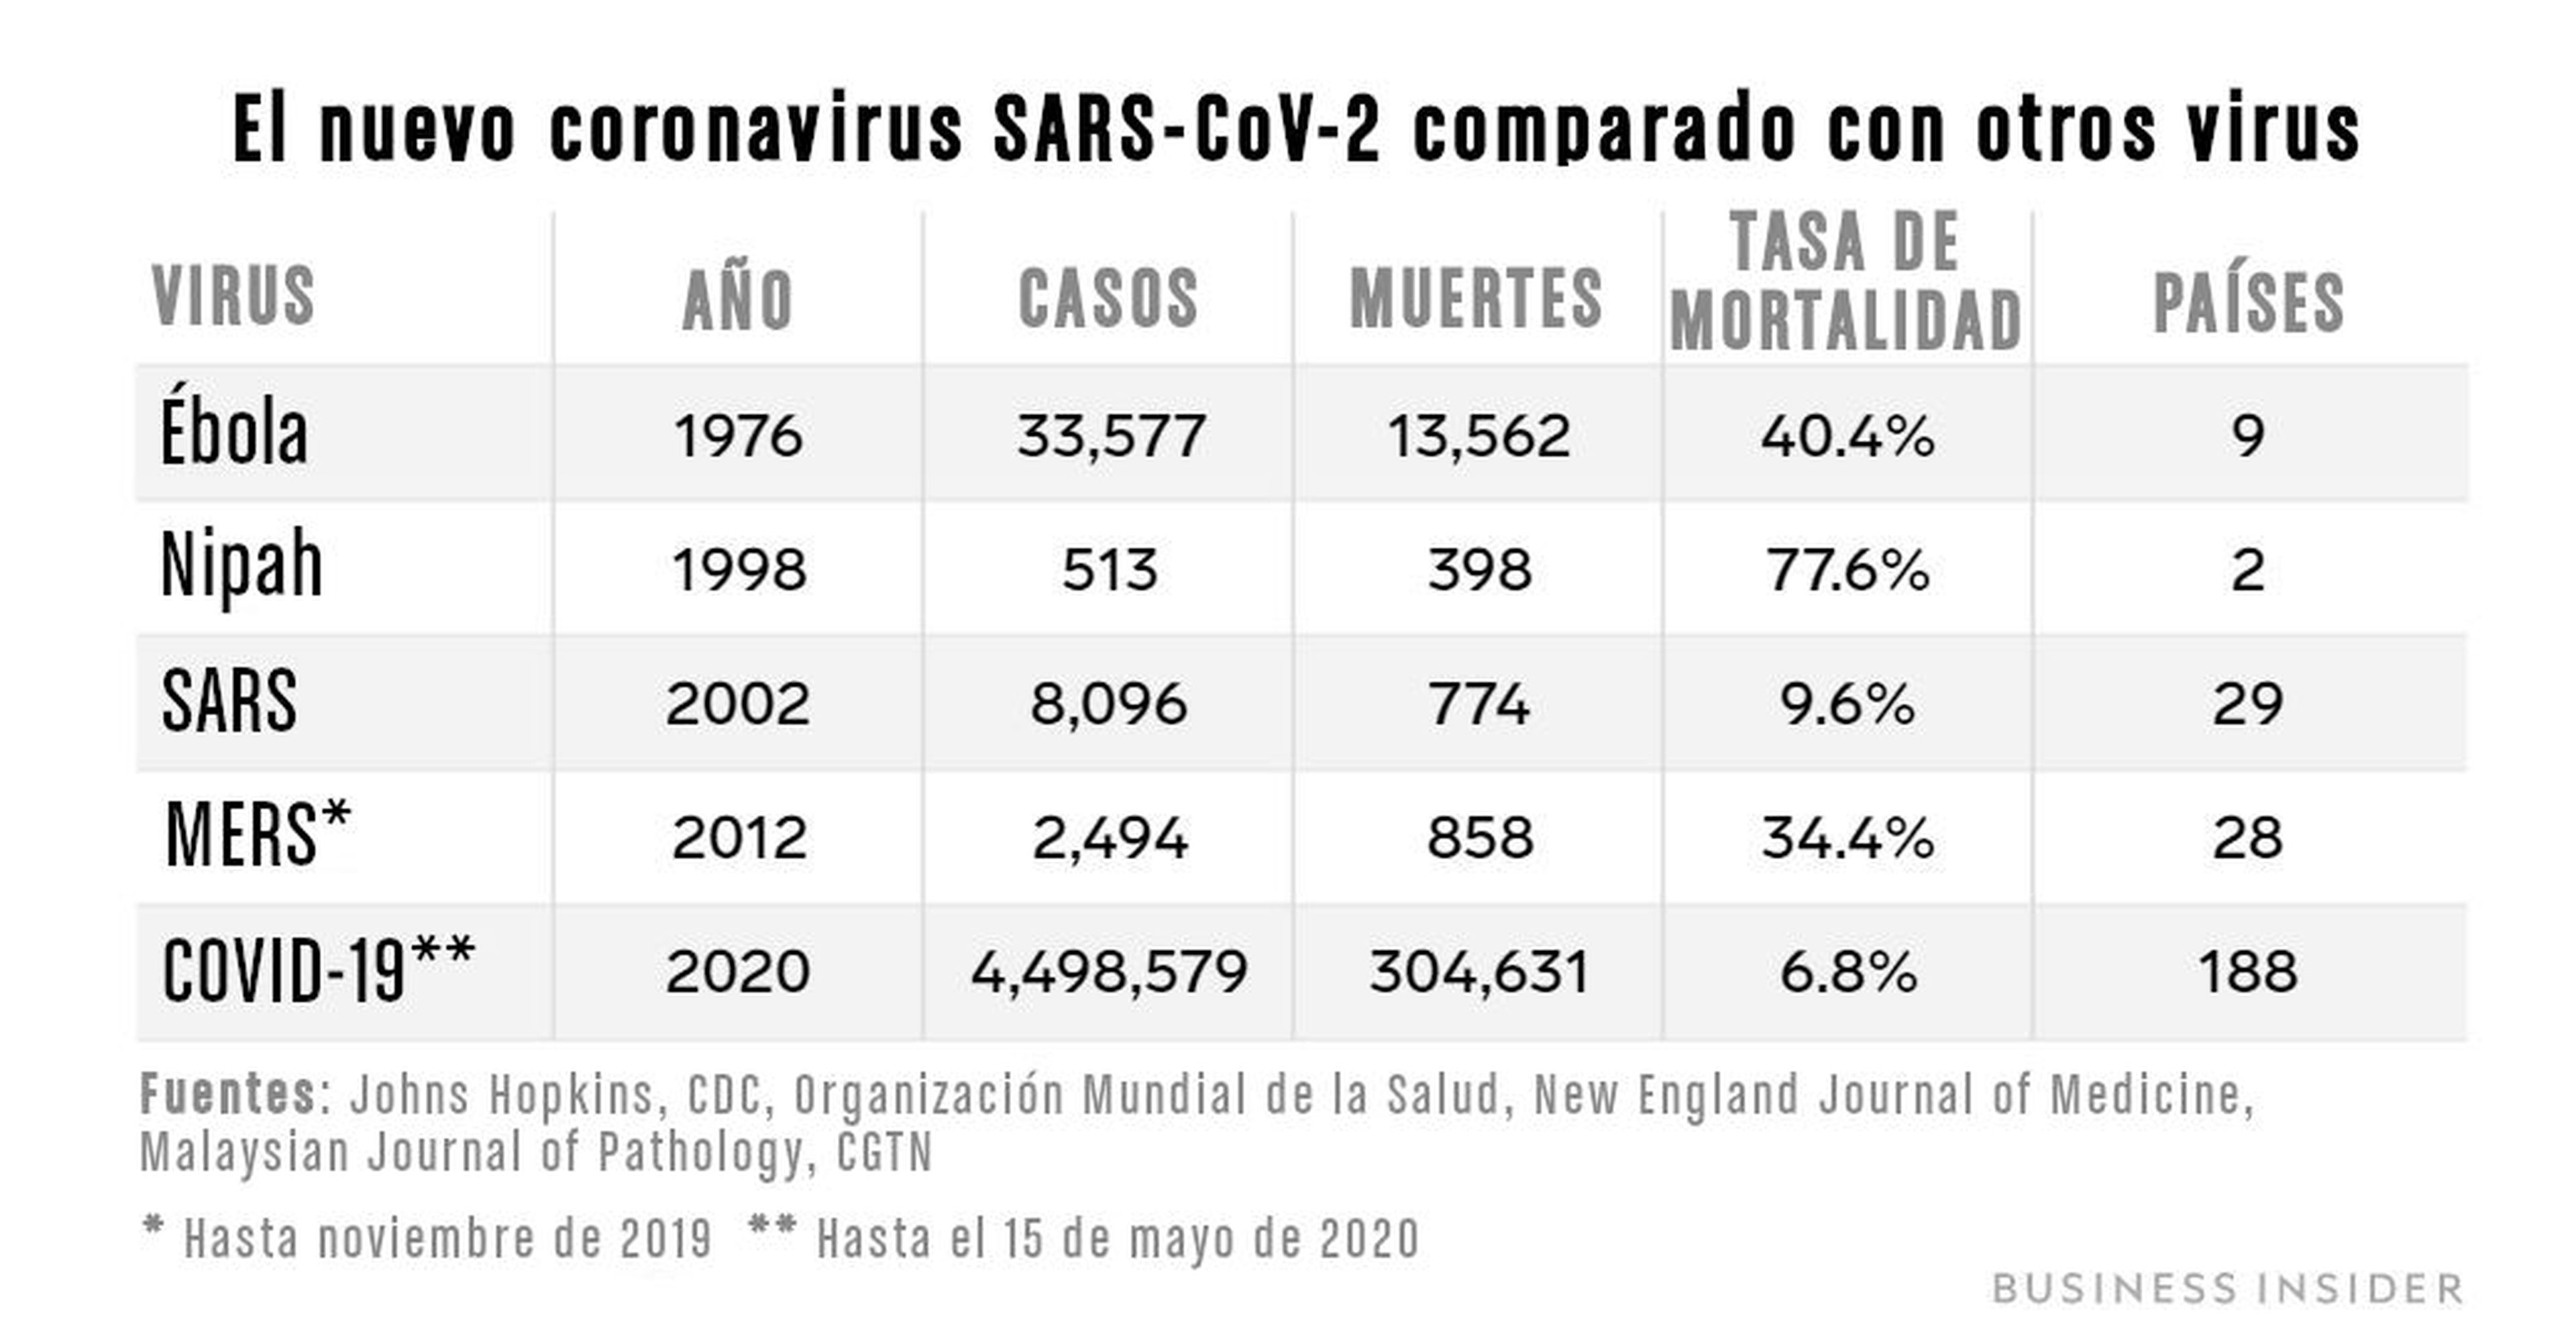 Comparación del coronavirus SARS-CoV-2 con otros virus importantes.